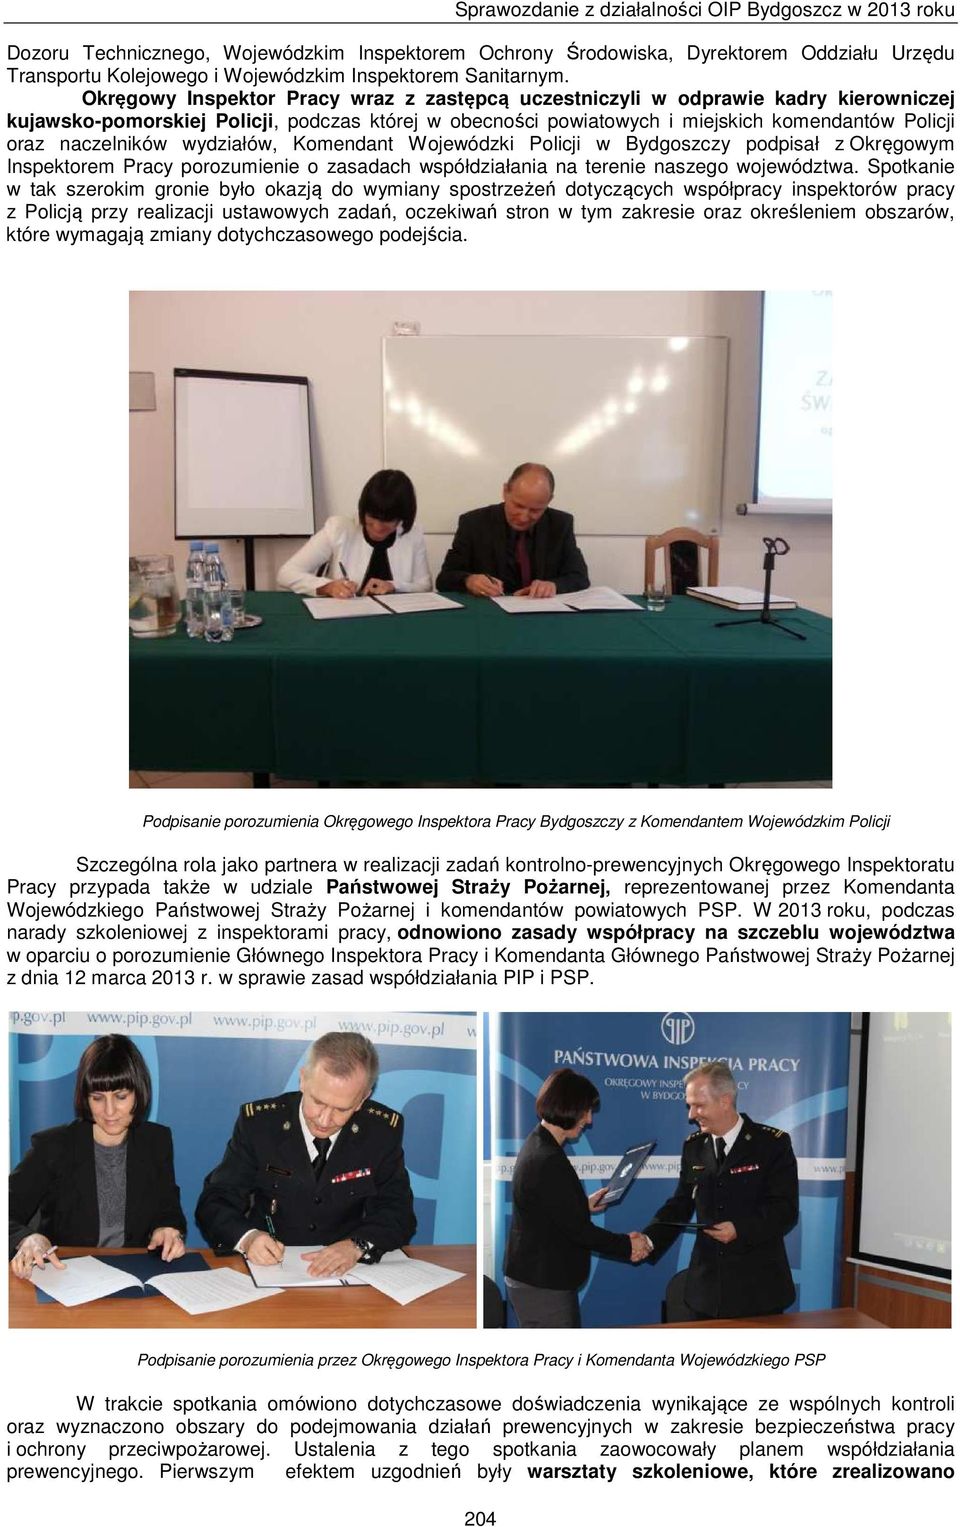 naczelników wydziałów, Komendant Wojewódzki Policji w Bydgoszczy podpisał z Okręgowym Inspektorem Pracy porozumienie o zasadach współdziałania na terenie naszego województwa.